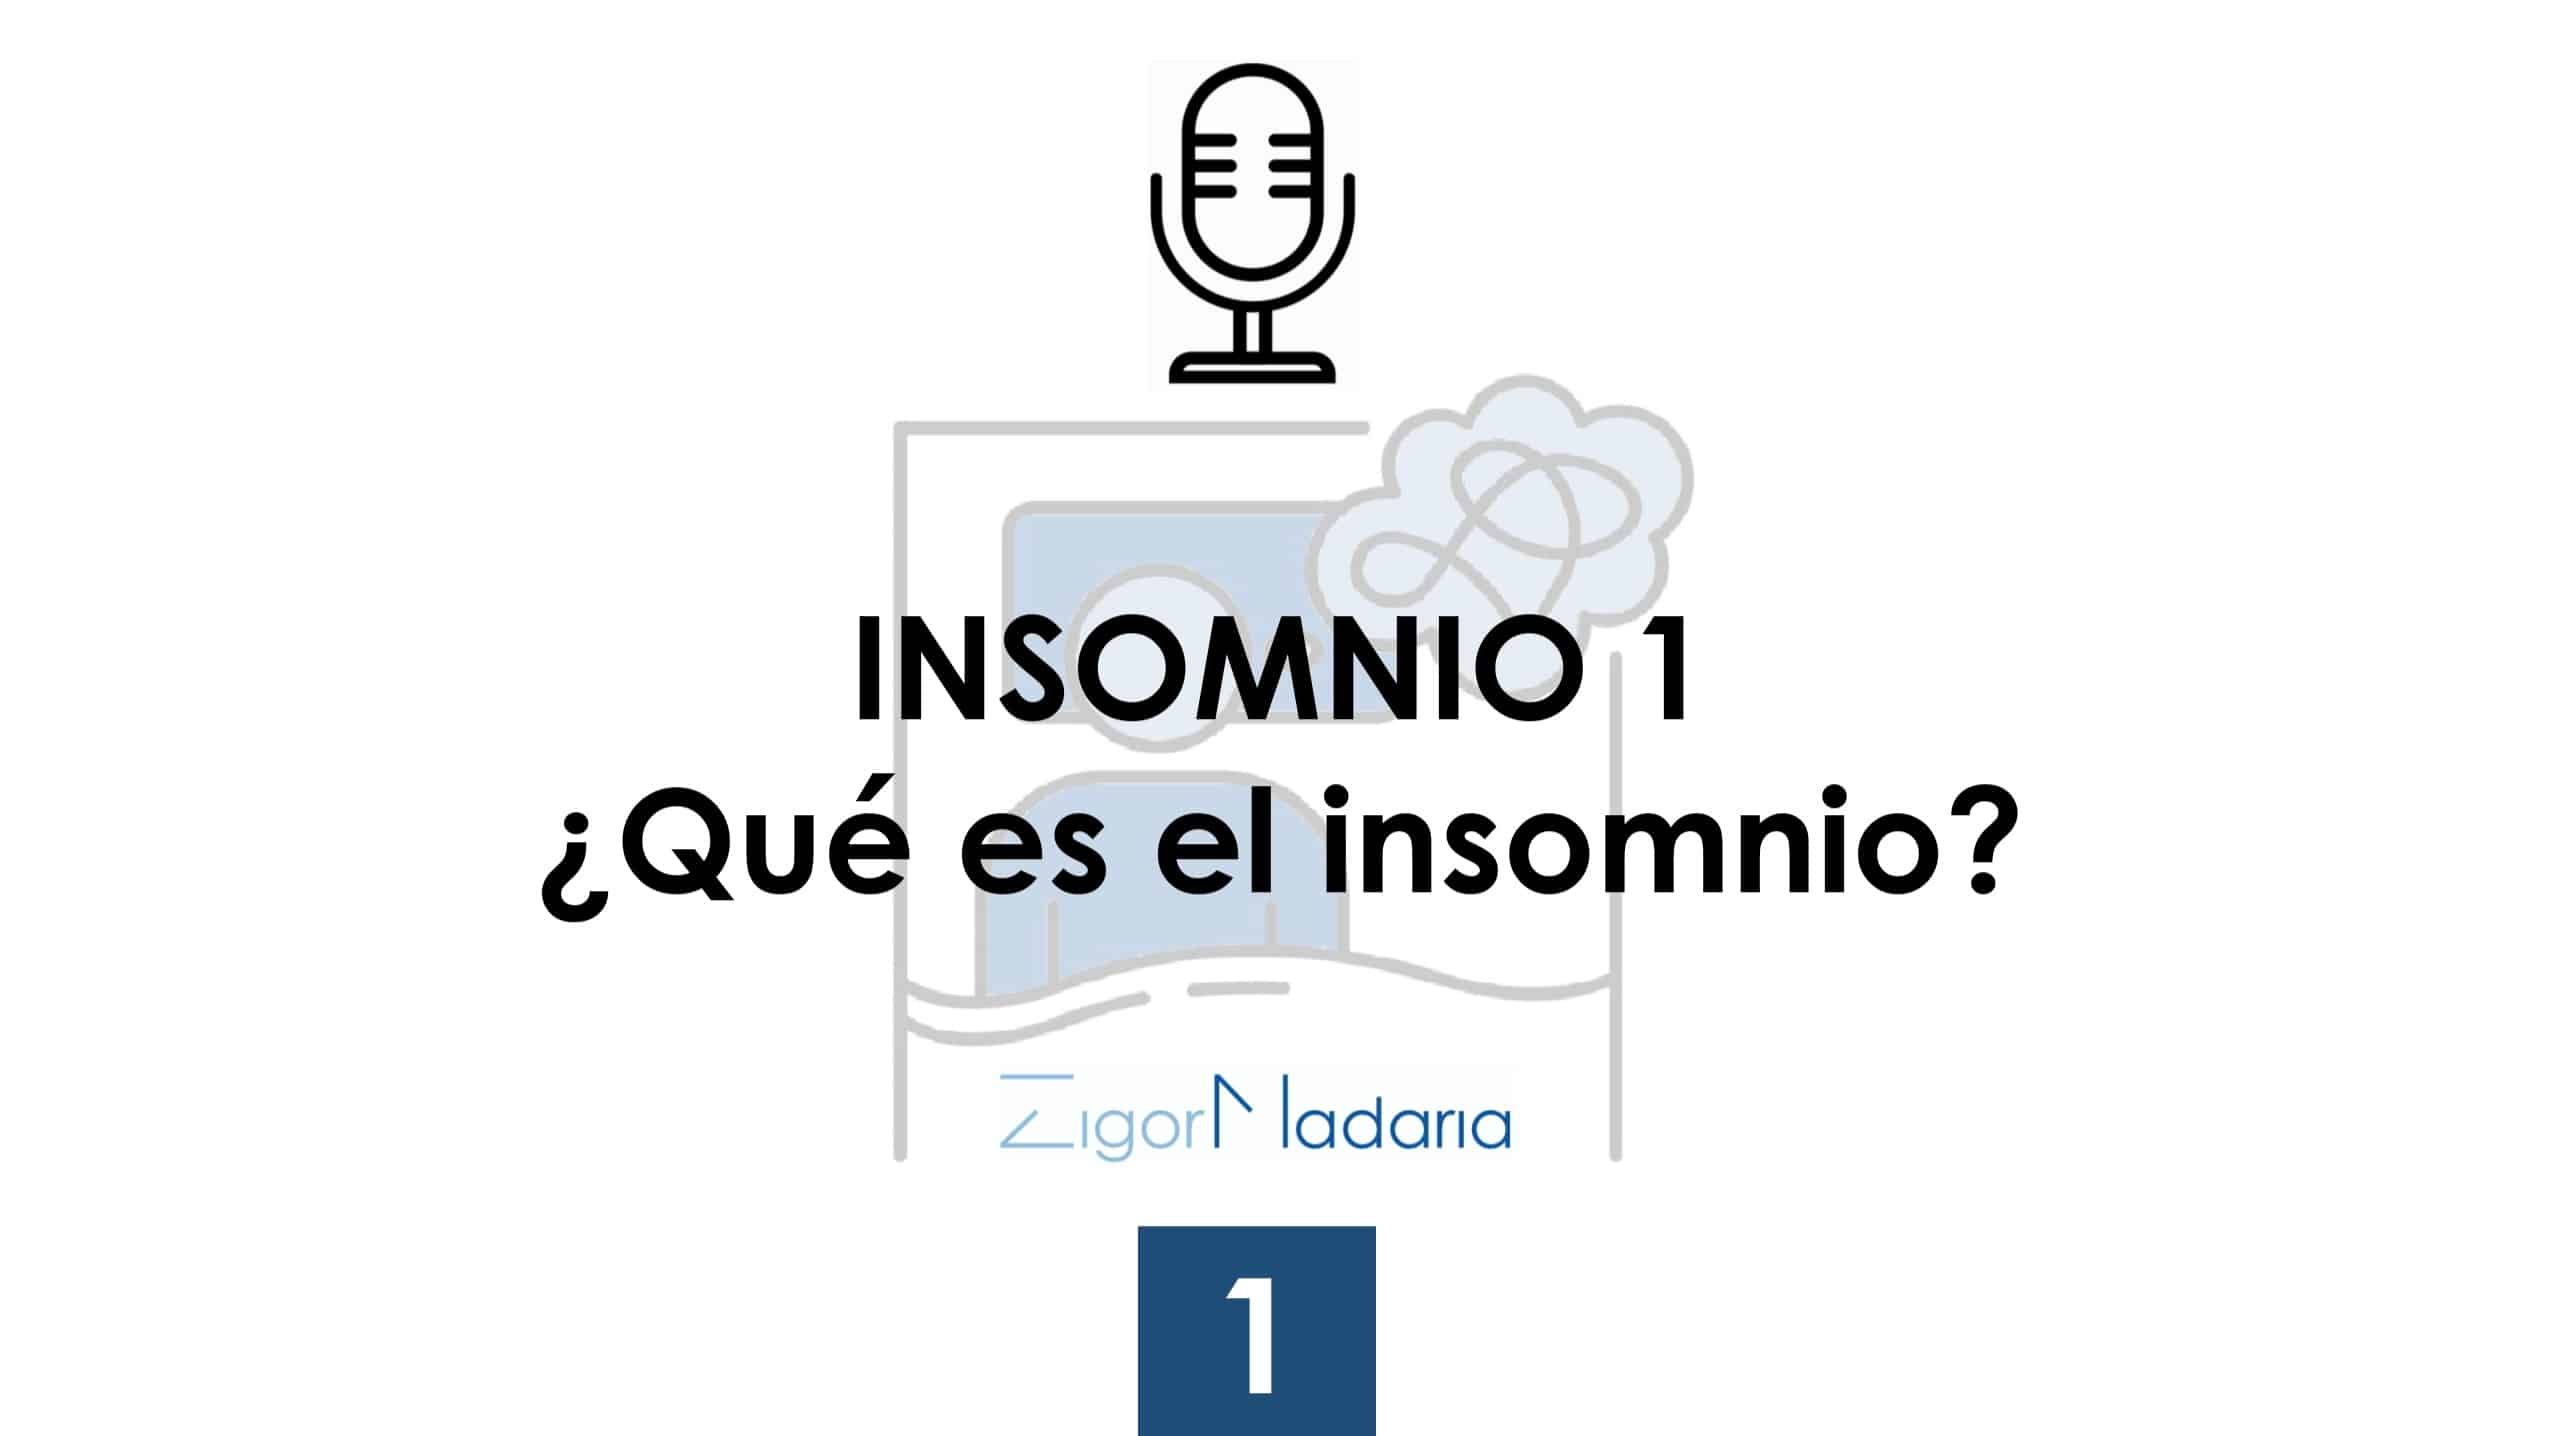 1. ¿Qué es el insomnio?